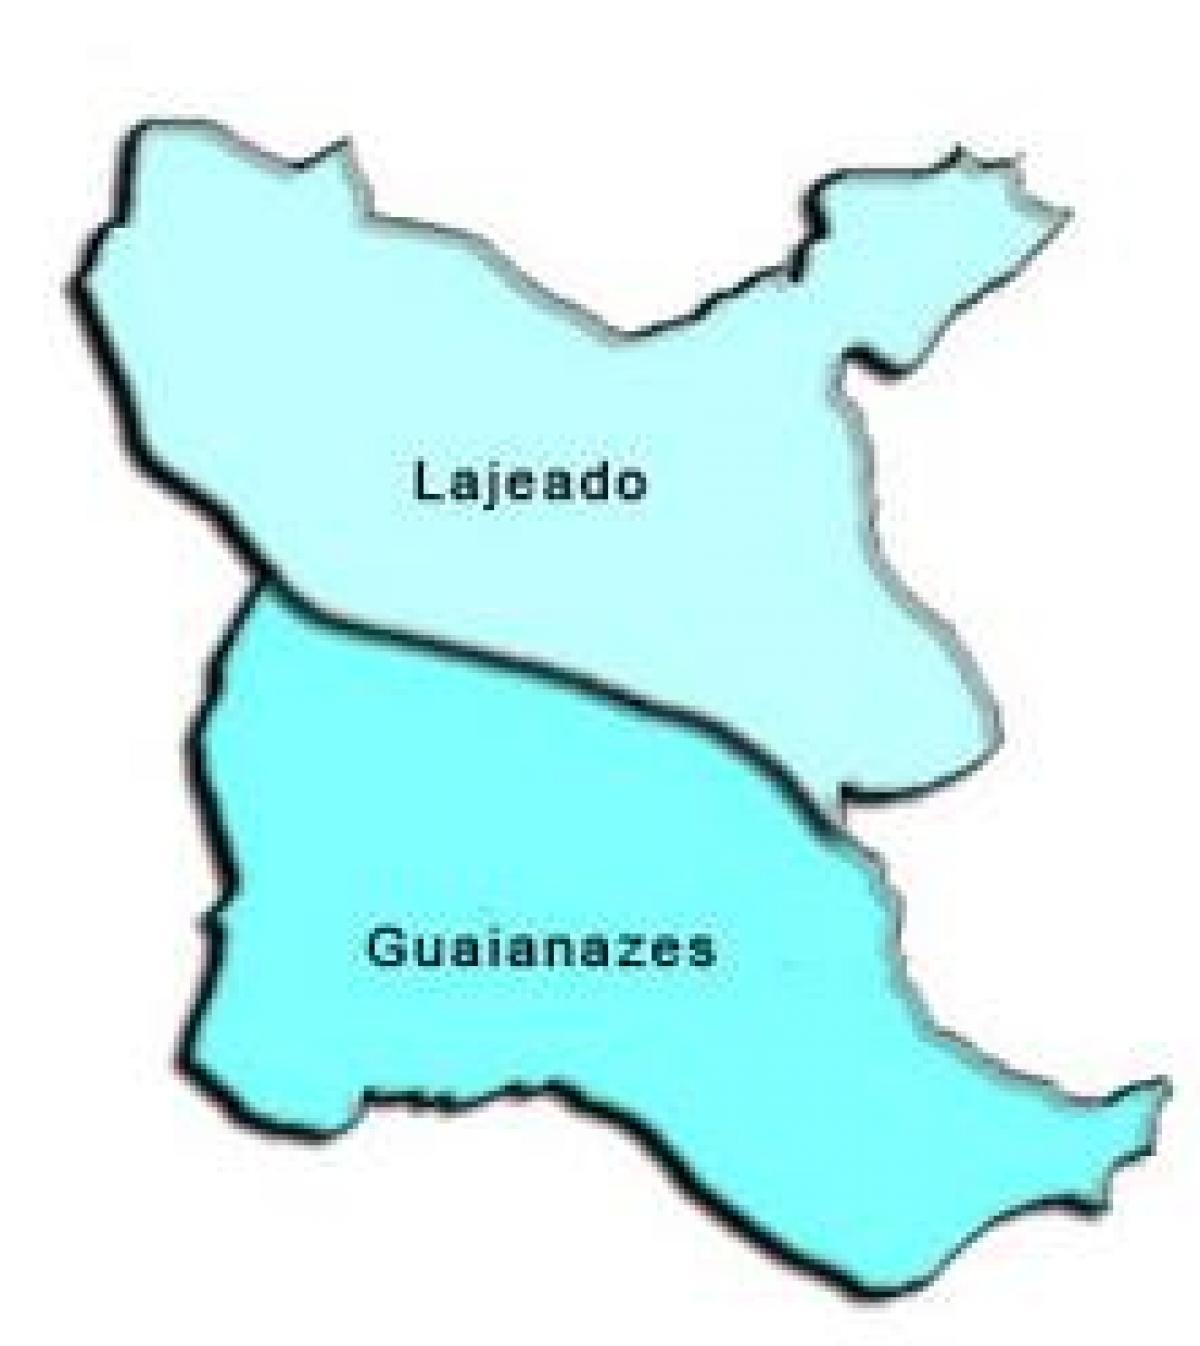 Peta Guaianases sub-prefecture